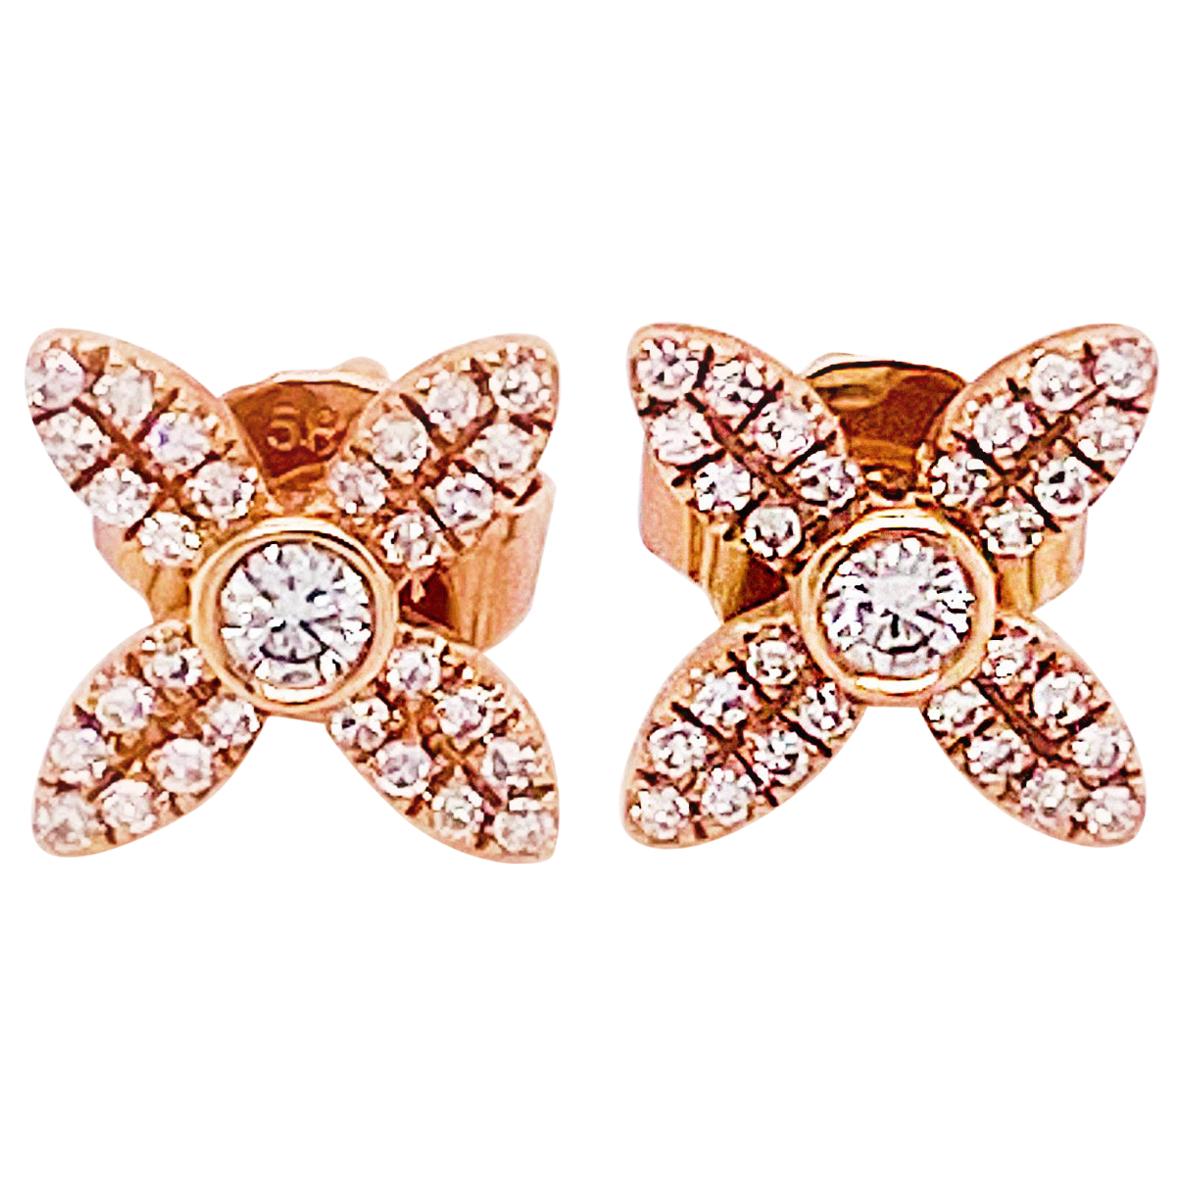 Diamond Clover Rose Gold Stud Earrings .16 Carat Diamond 14K Gold Earring Studs For Sale